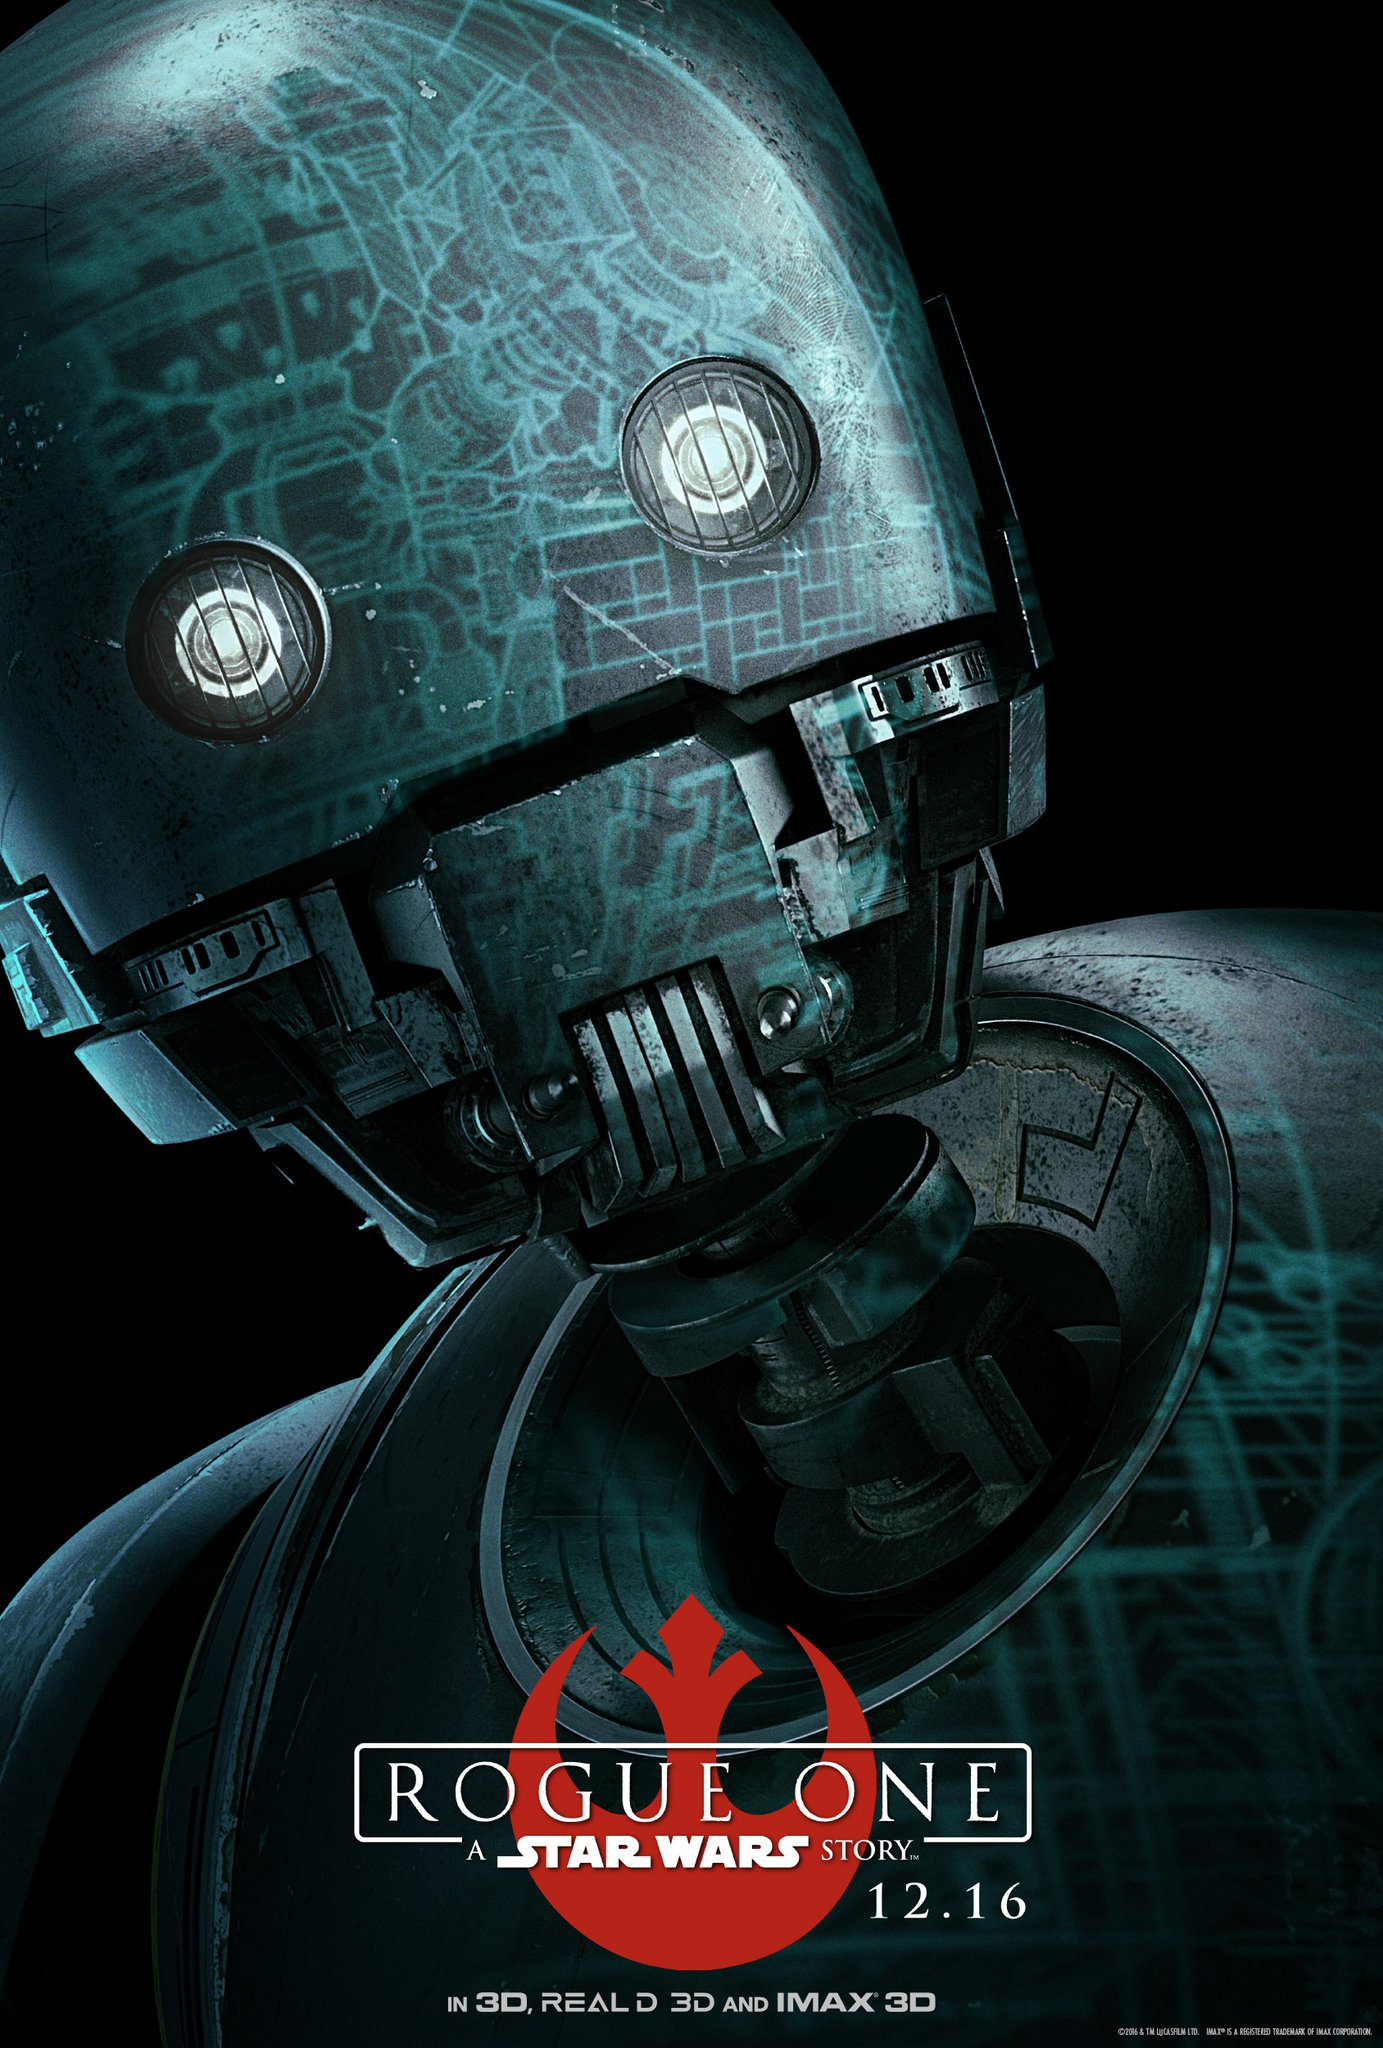 K-2SO (Alan Tudyk) a film lázadó csapatának droid tagja. Biztonsági droidnak tervezték, kemény, erős és magabiztos konstrukció. A rendező szerint C-3PO szöges ellentéte, kicsit olyan, mint Csubakka személyisége egy droidba bújtatva.